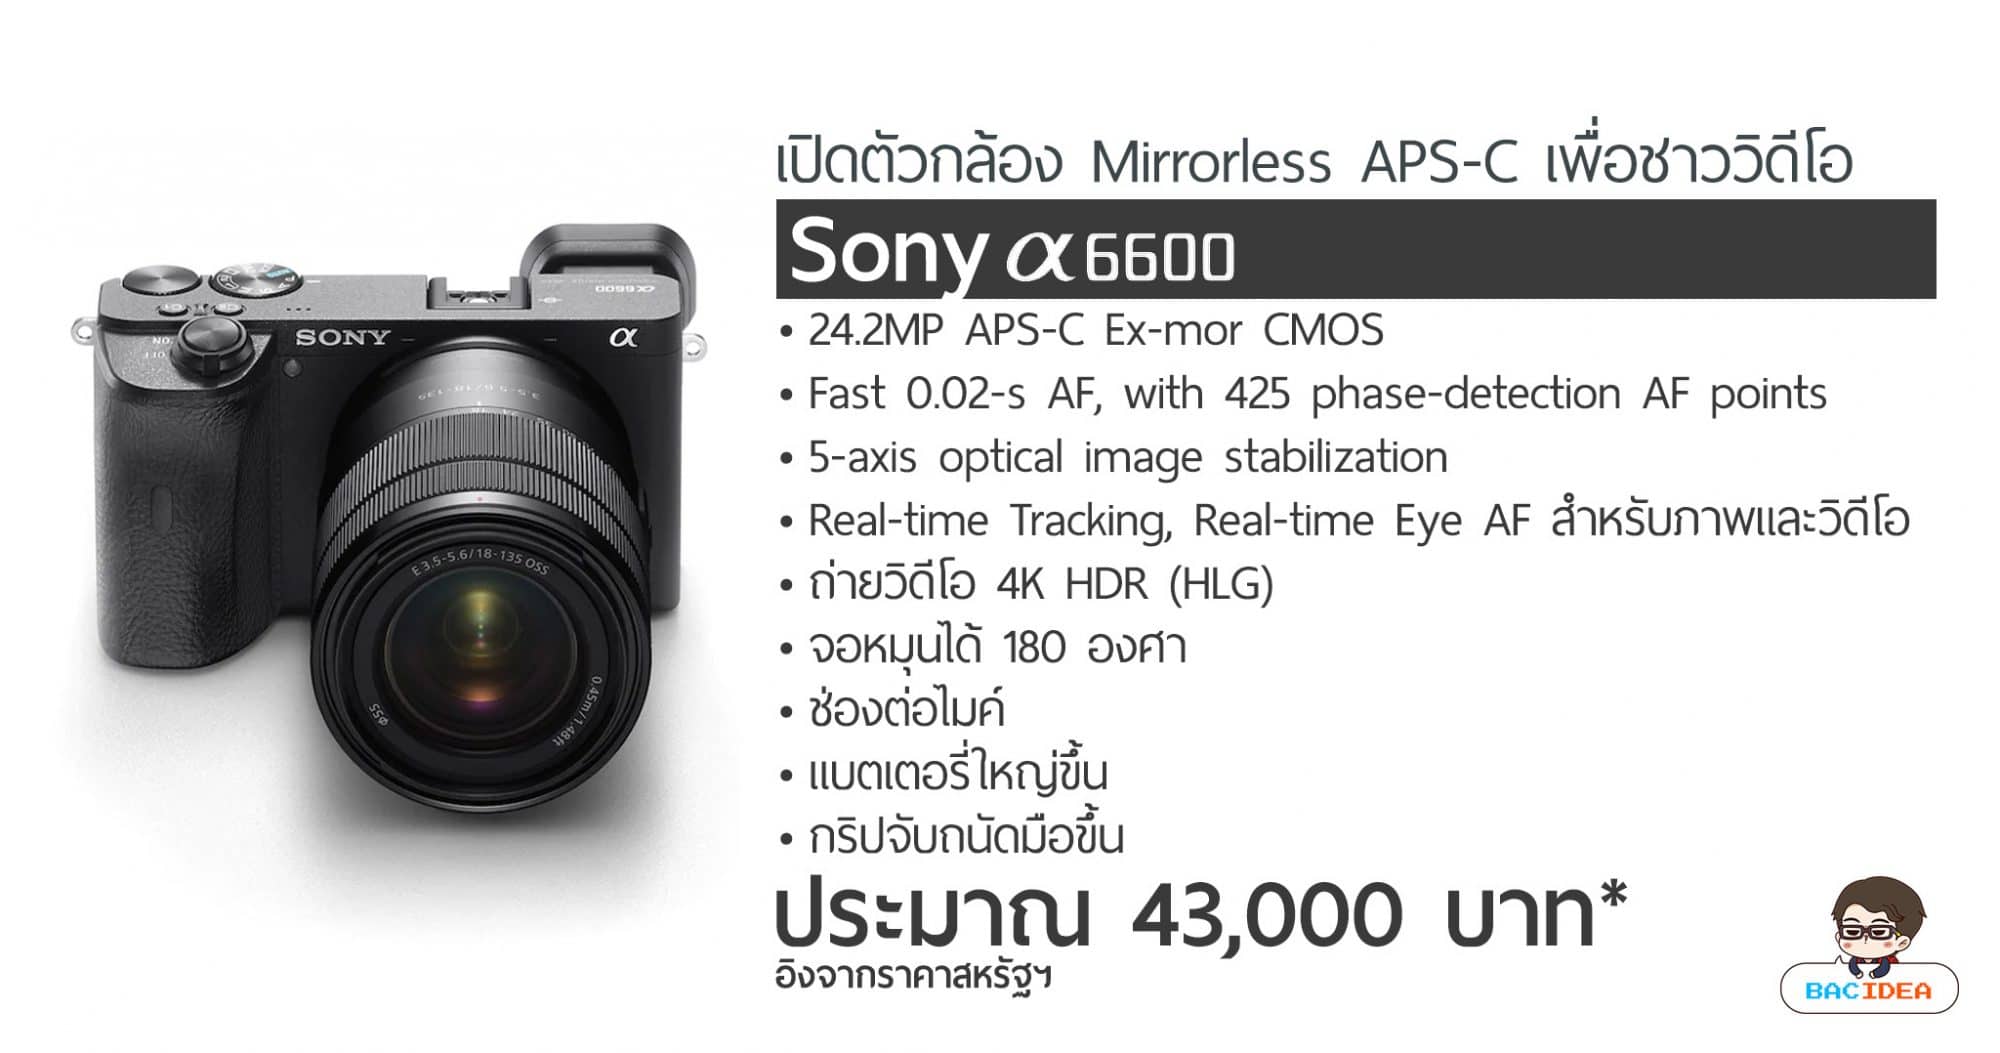 เปิดตัว Sony a6600 กล้อง APS-C เพื่อสาย VLOG ราคาประมาณ 43,000.- 1